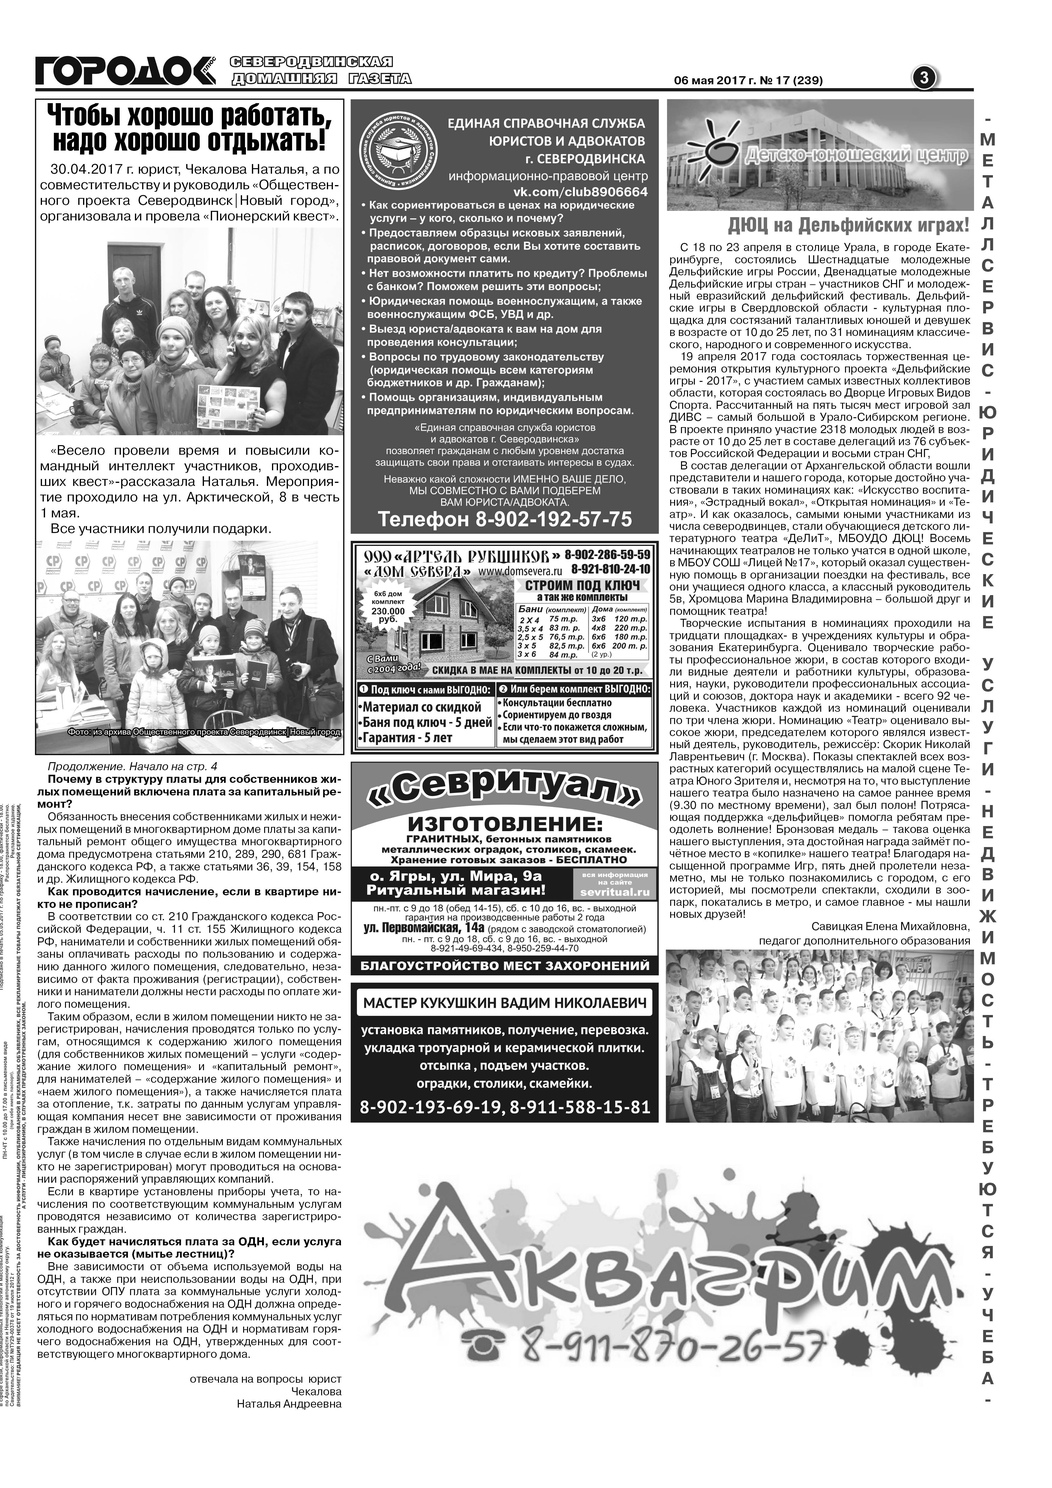 Городок плюс, выпуск номер 17 от 07 мая 2017 года, страница 3.